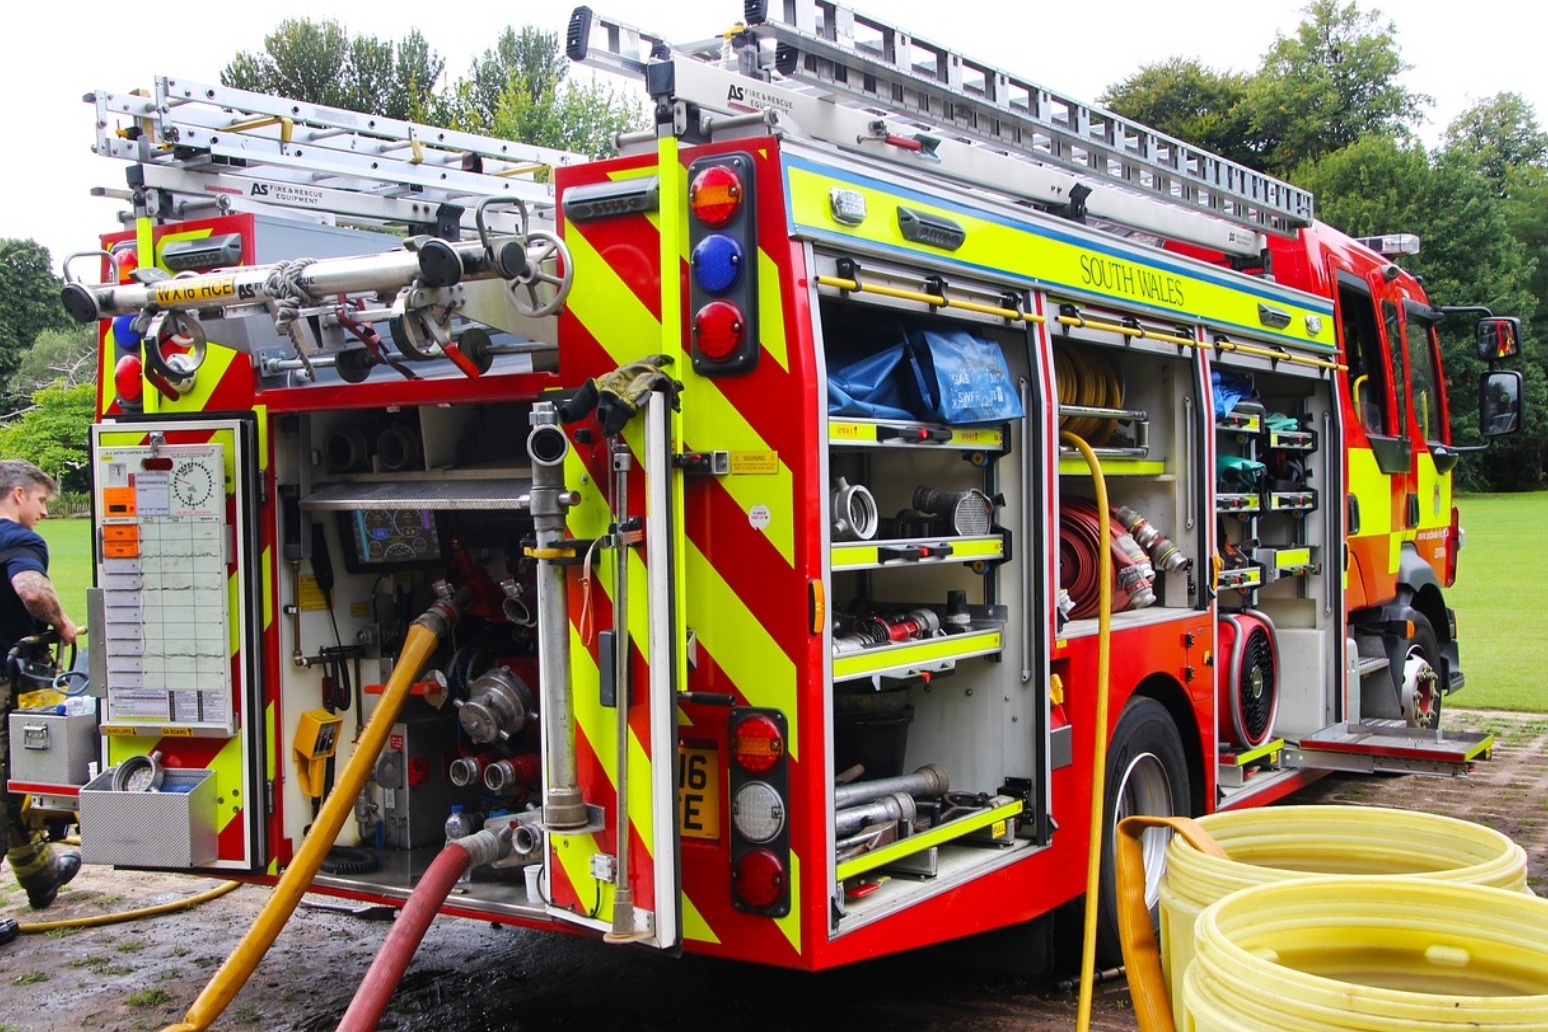 Fire crews dealing with UK grass fires 